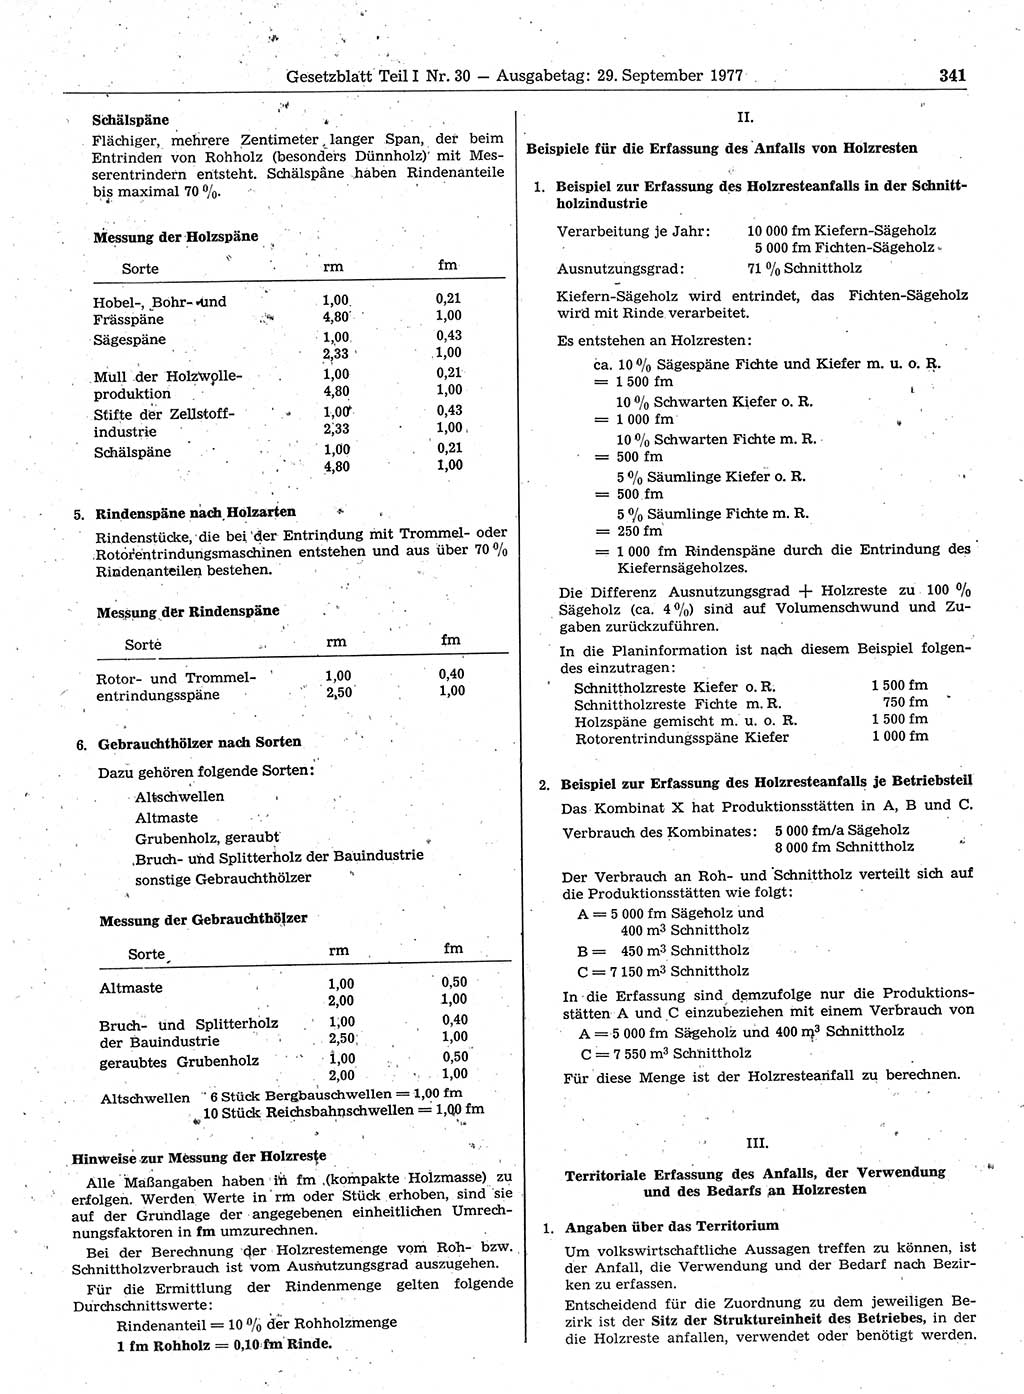 Gesetzblatt (GBl.) der Deutschen Demokratischen Republik (DDR) Teil Ⅰ 1977, Seite 341 (GBl. DDR Ⅰ 1977, S. 341)